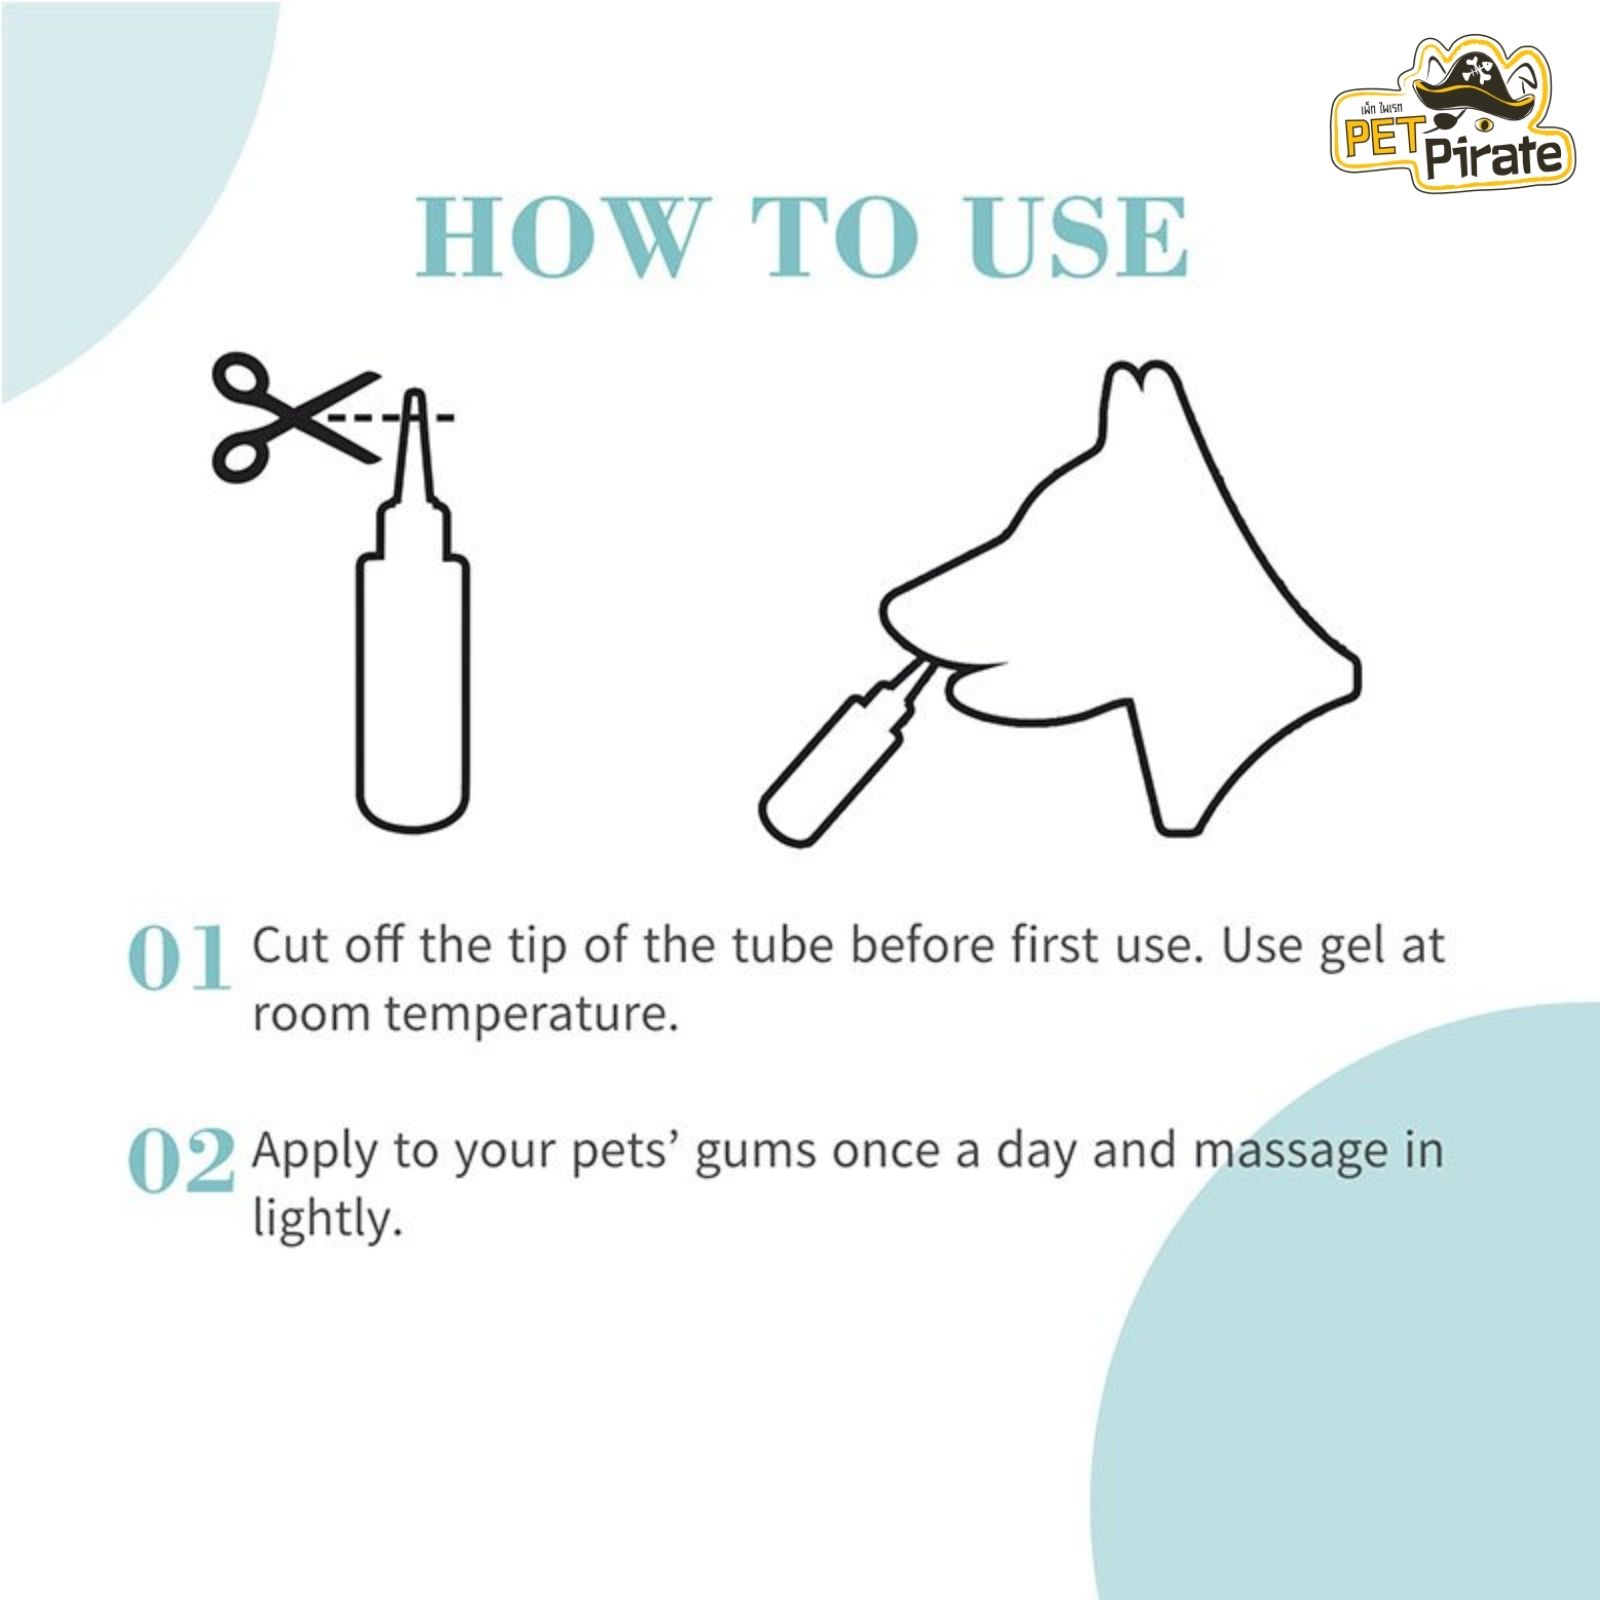 ที่บ้วนปาก Bioline Dental Hygiene Gel เจลทำความสะอาดฟัน สำหรับสุนัขและแมว รสเนื้อ ขนาดบรรจุ 100 กรัม